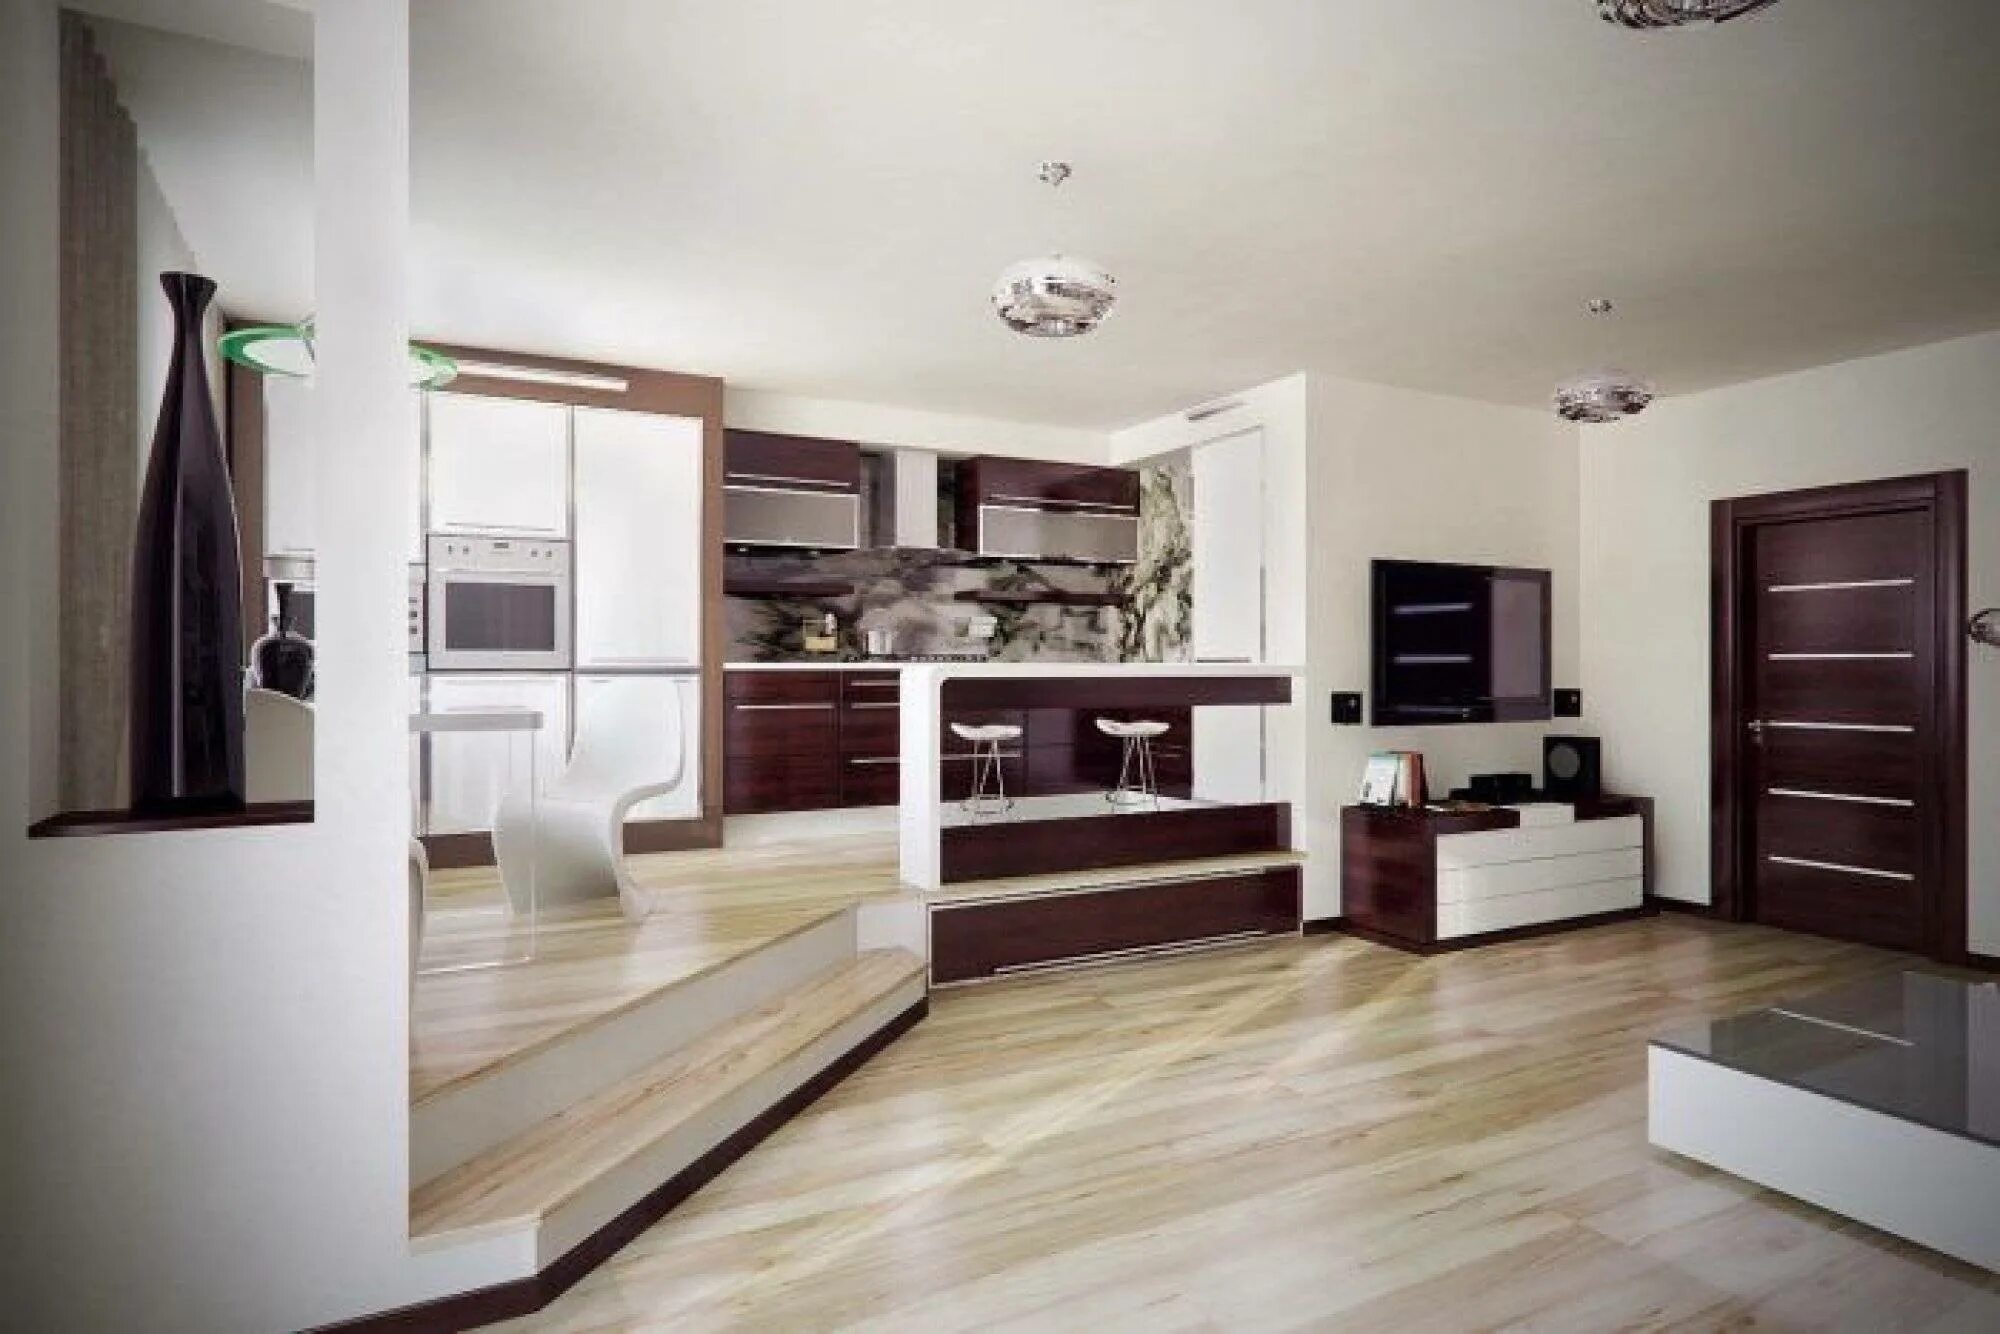 Дизайн подиум. Кухня гостиная. Кухня на подиуме. Кухня гостиная со ступенькой. Кухня на подиуме с гостиной.